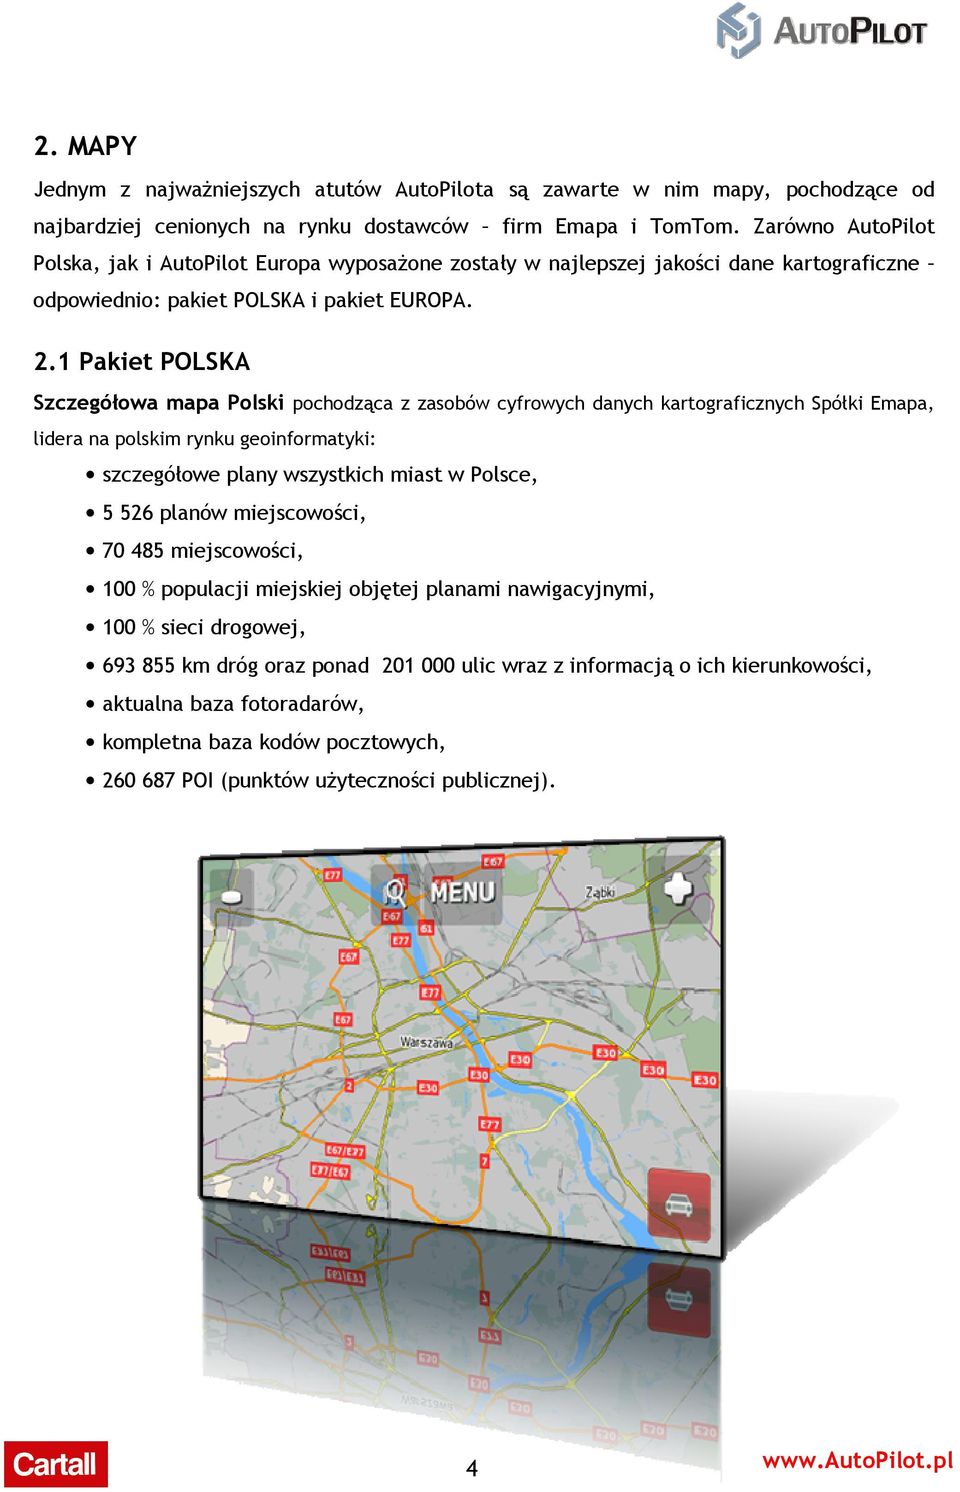 1 Pakiet POLSKA Szczegółowa mapa Polski pochodząca z zasobów cyfrowych danych kartograficznych Spółki Emapa, lidera na polskim rynku geoinformatyki: szczegółowe plany wszystkich miast w Polsce, 5 526